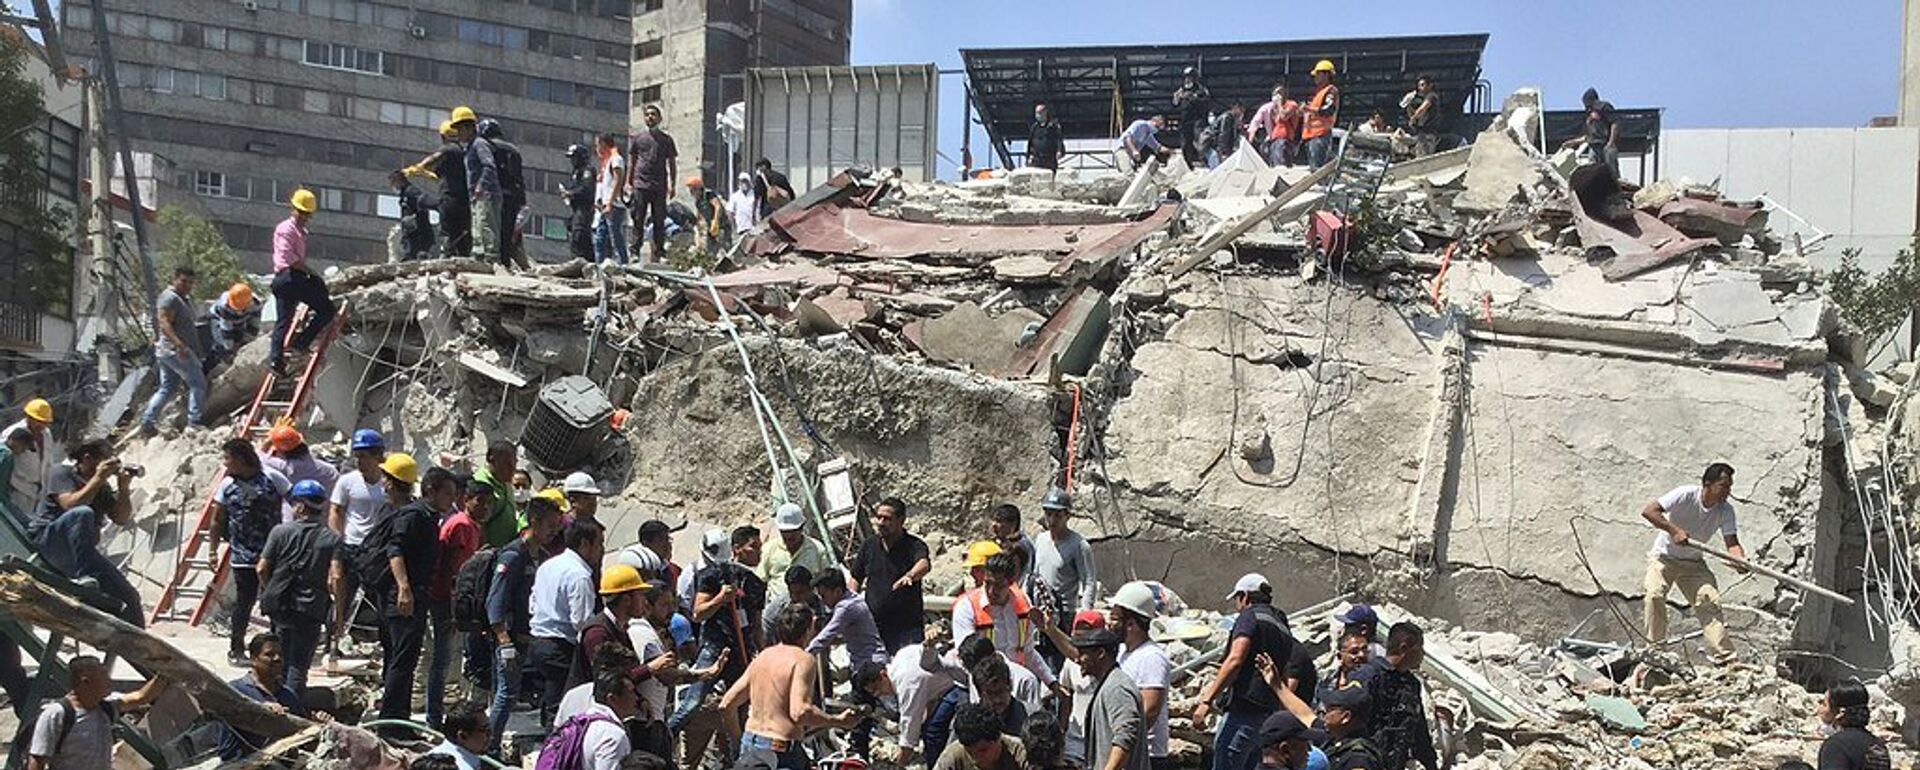 Terremoto de 2017 en México - Sputnik Mundo, 1920, 19.09.2019